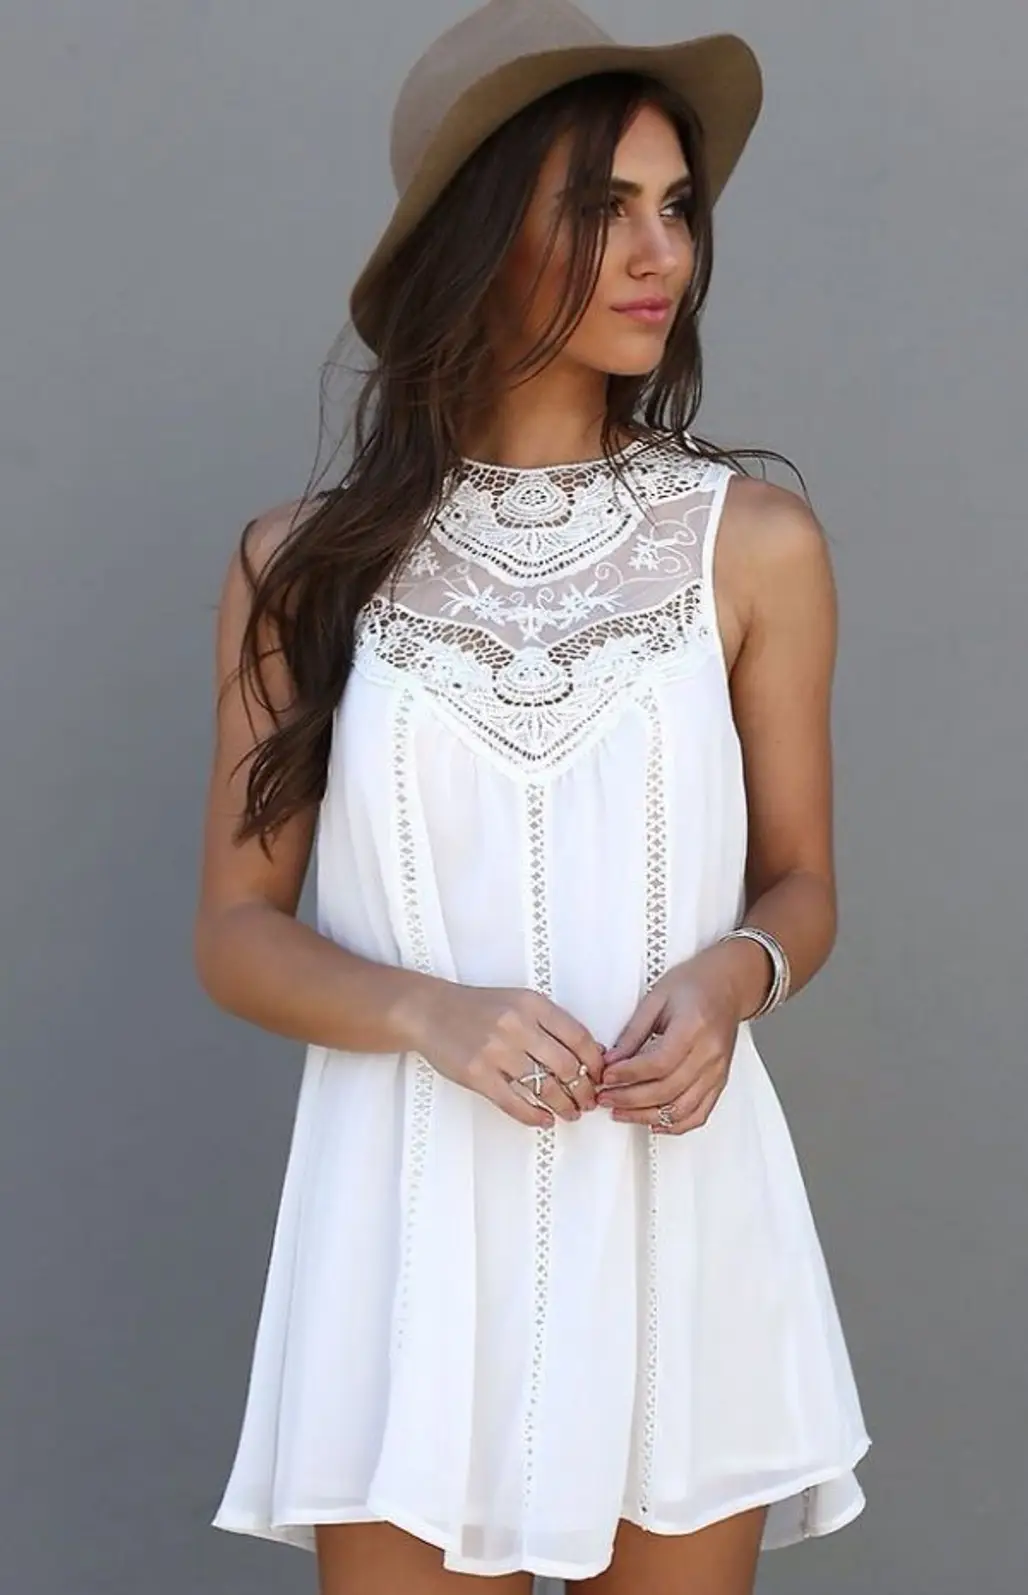 white,clothing,dress,sleeve,wedding dress,